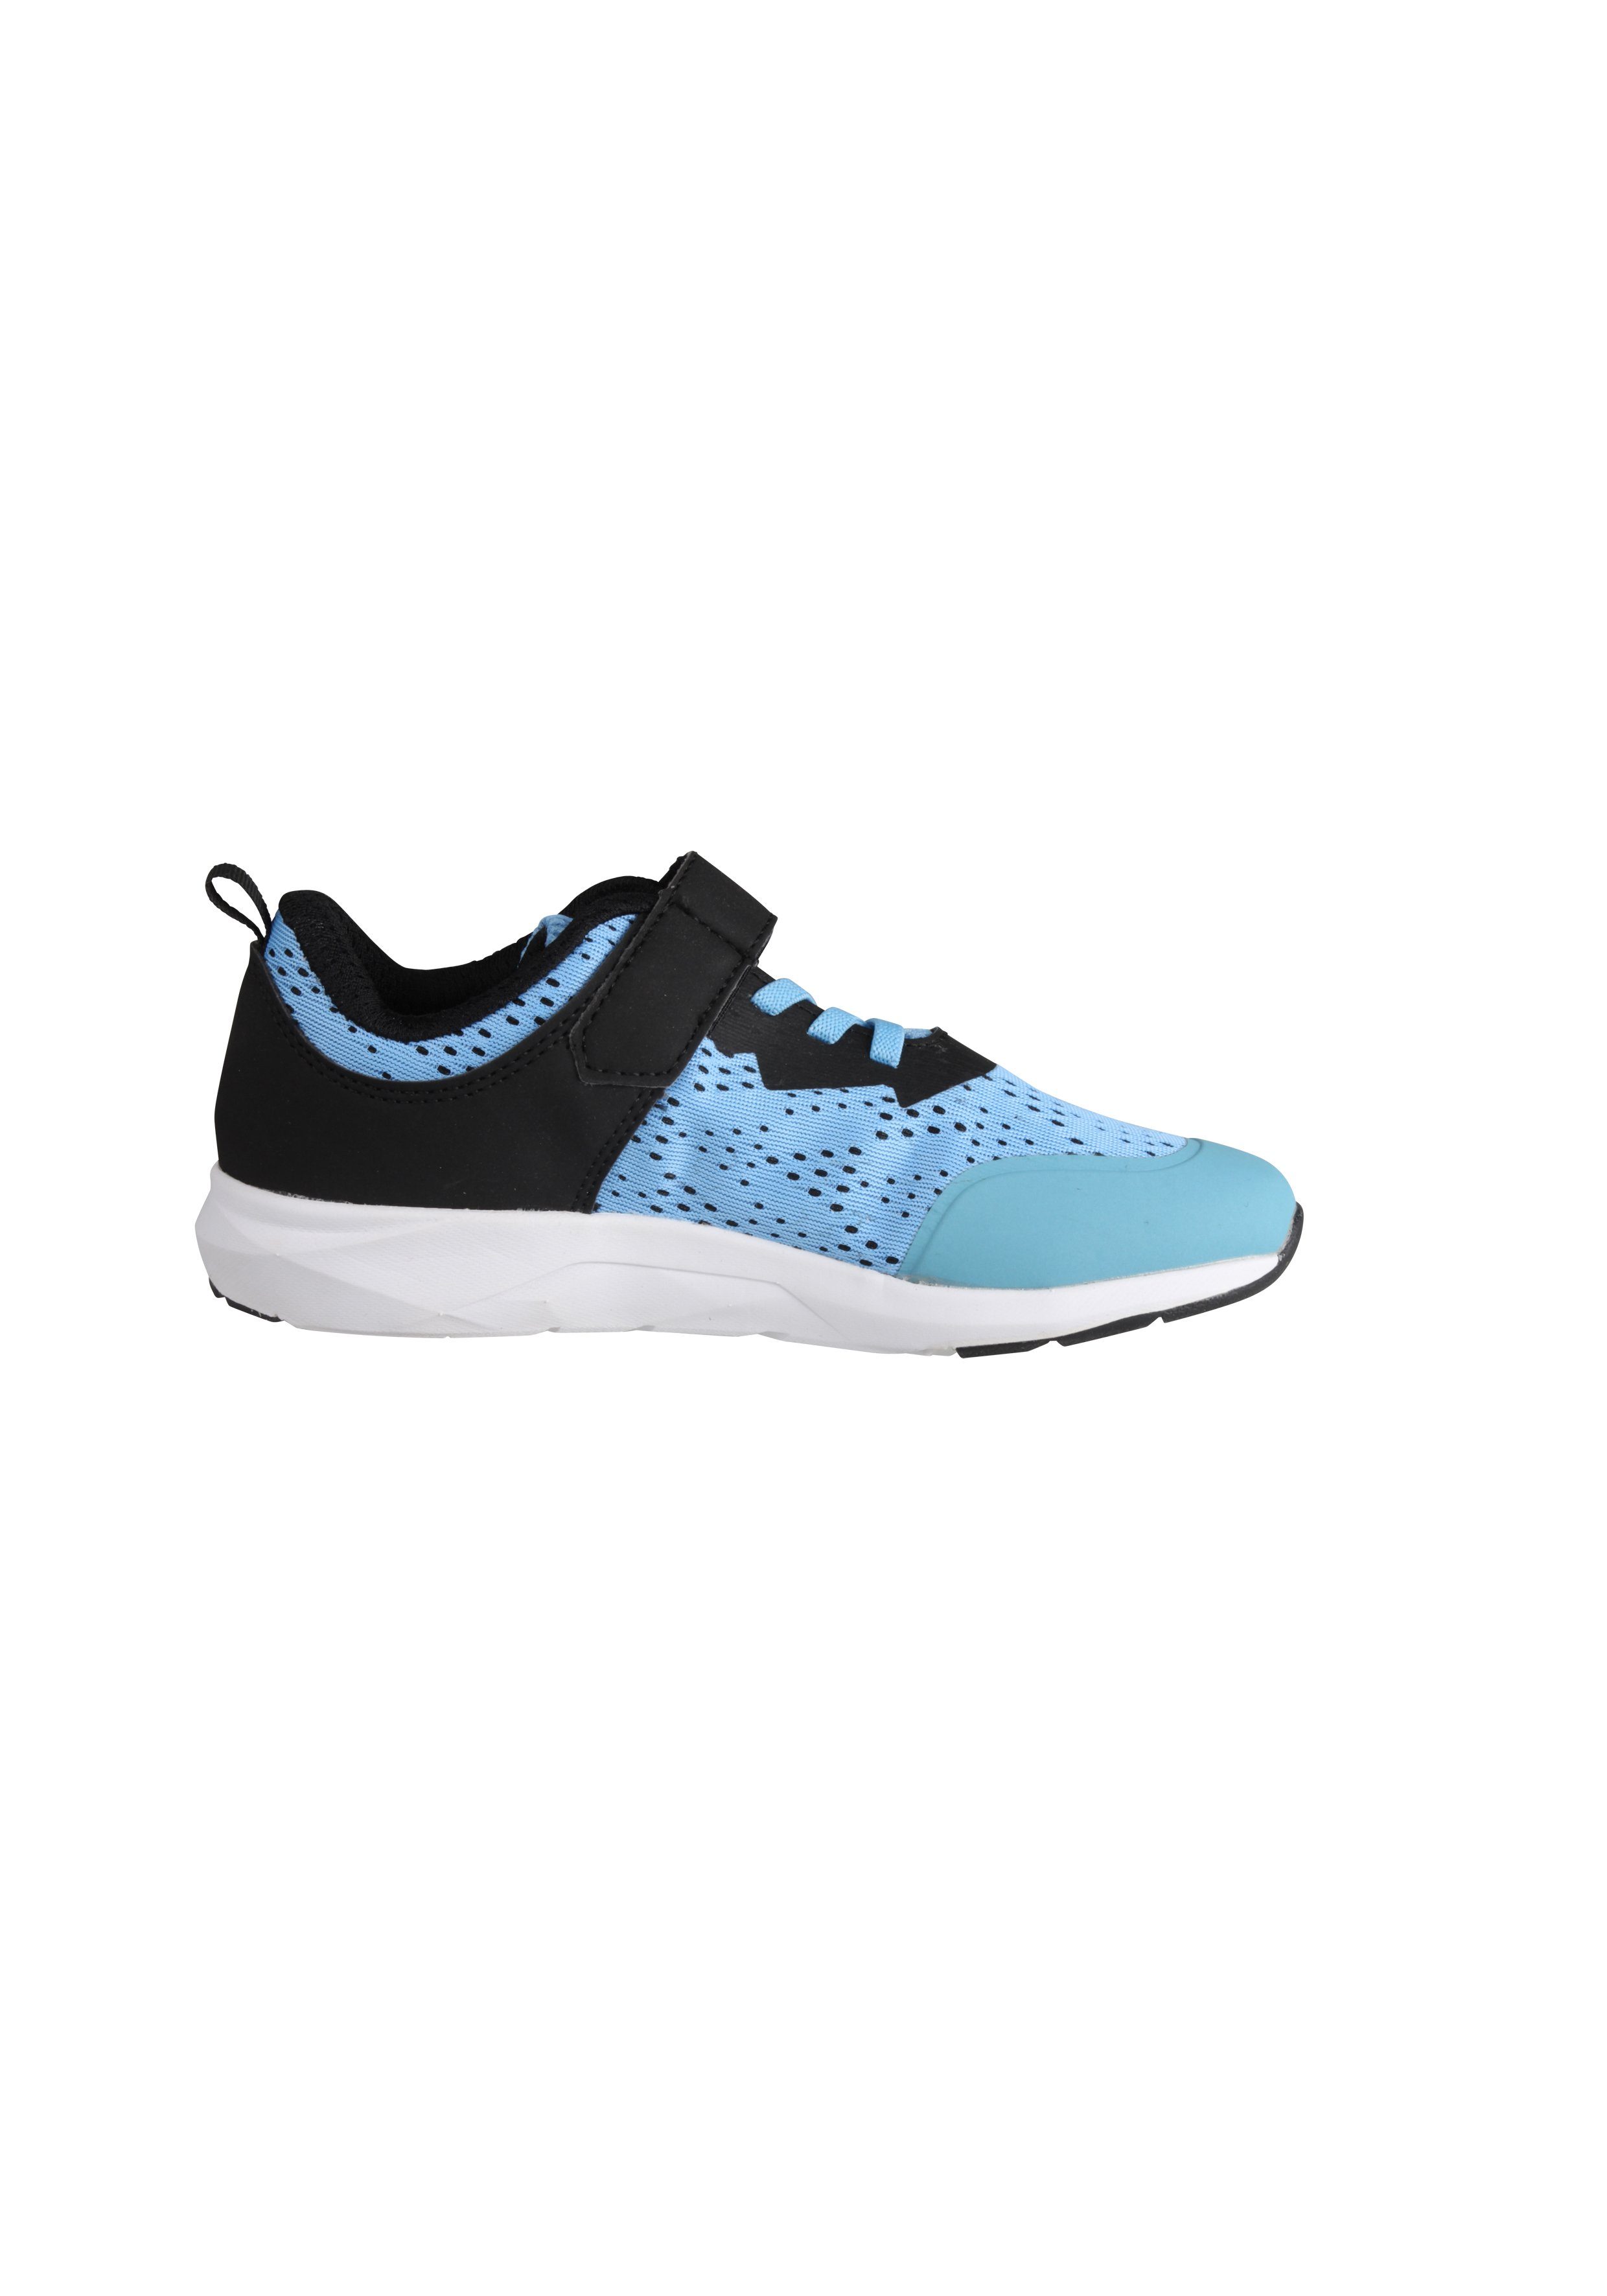 Alpina Sports Fun blau-schwarz Sneaker verstärkter Ferse mit